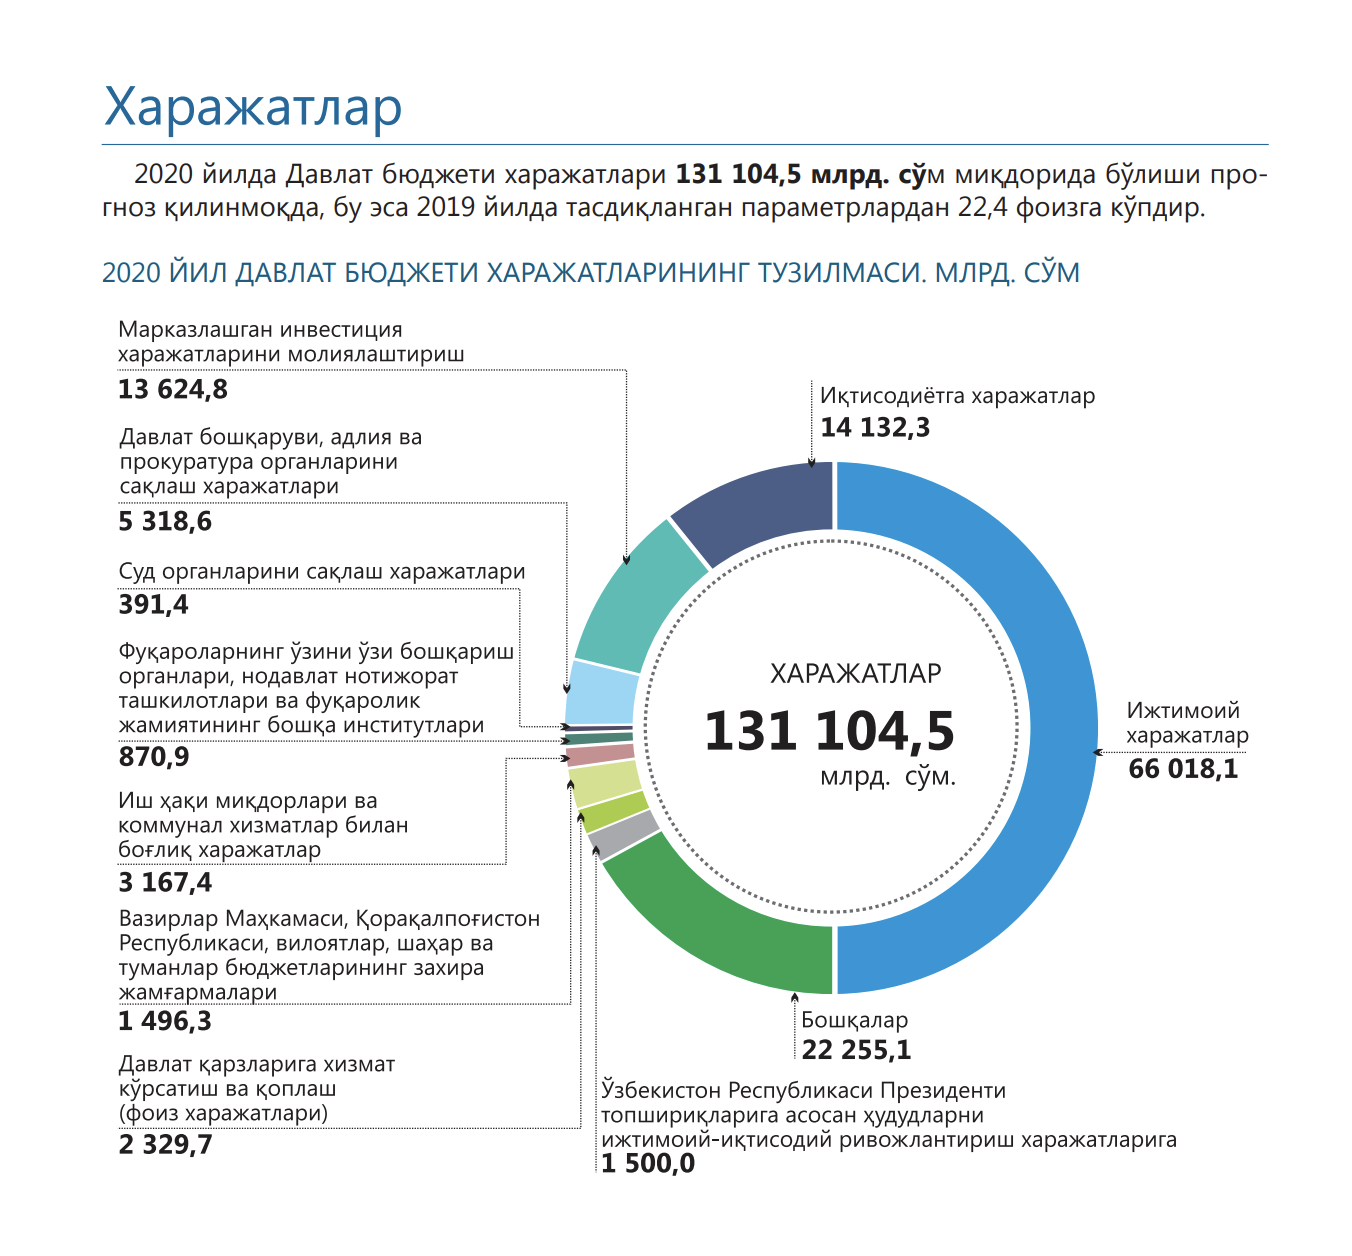 Общая сумма денежных поступлений в бюджет государства. Структура расходов госбюджета 2020. Структура госбюджета Узбекистана. Структура доходов госбюджета Узбекистана. Бюджет Узбекистана на 2020.